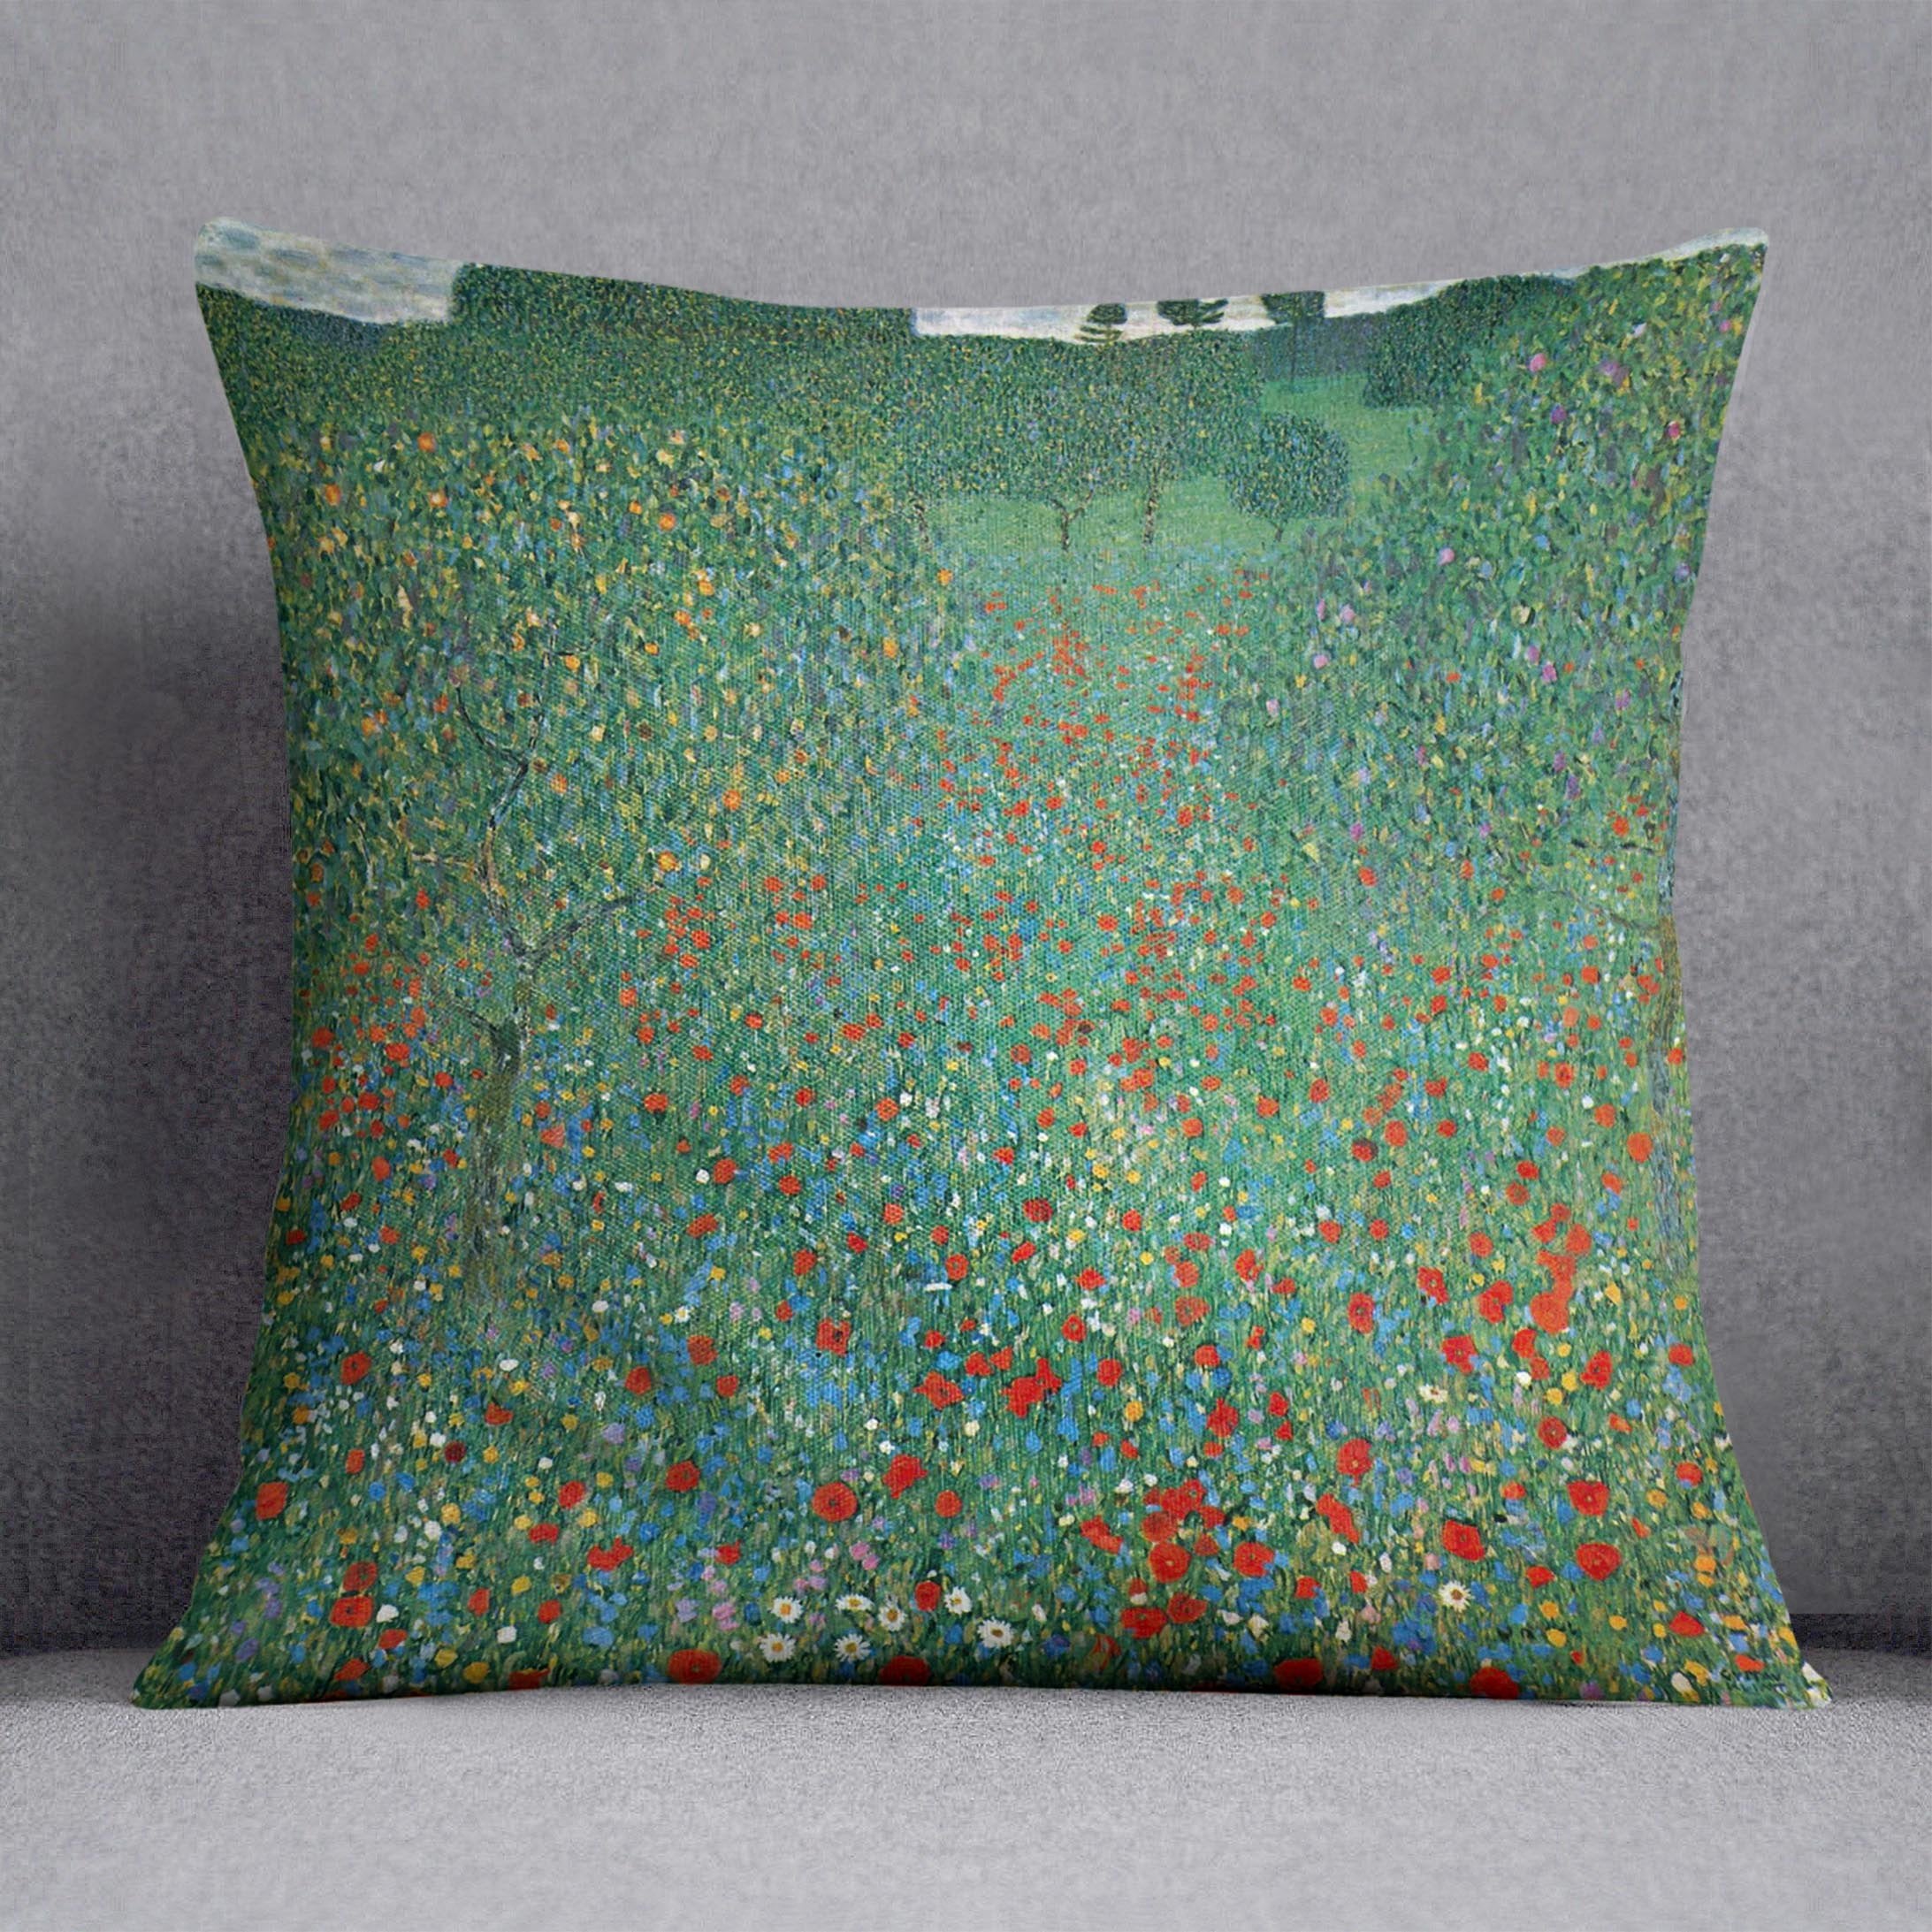 Poppy Field by Klimt Throw Pillow